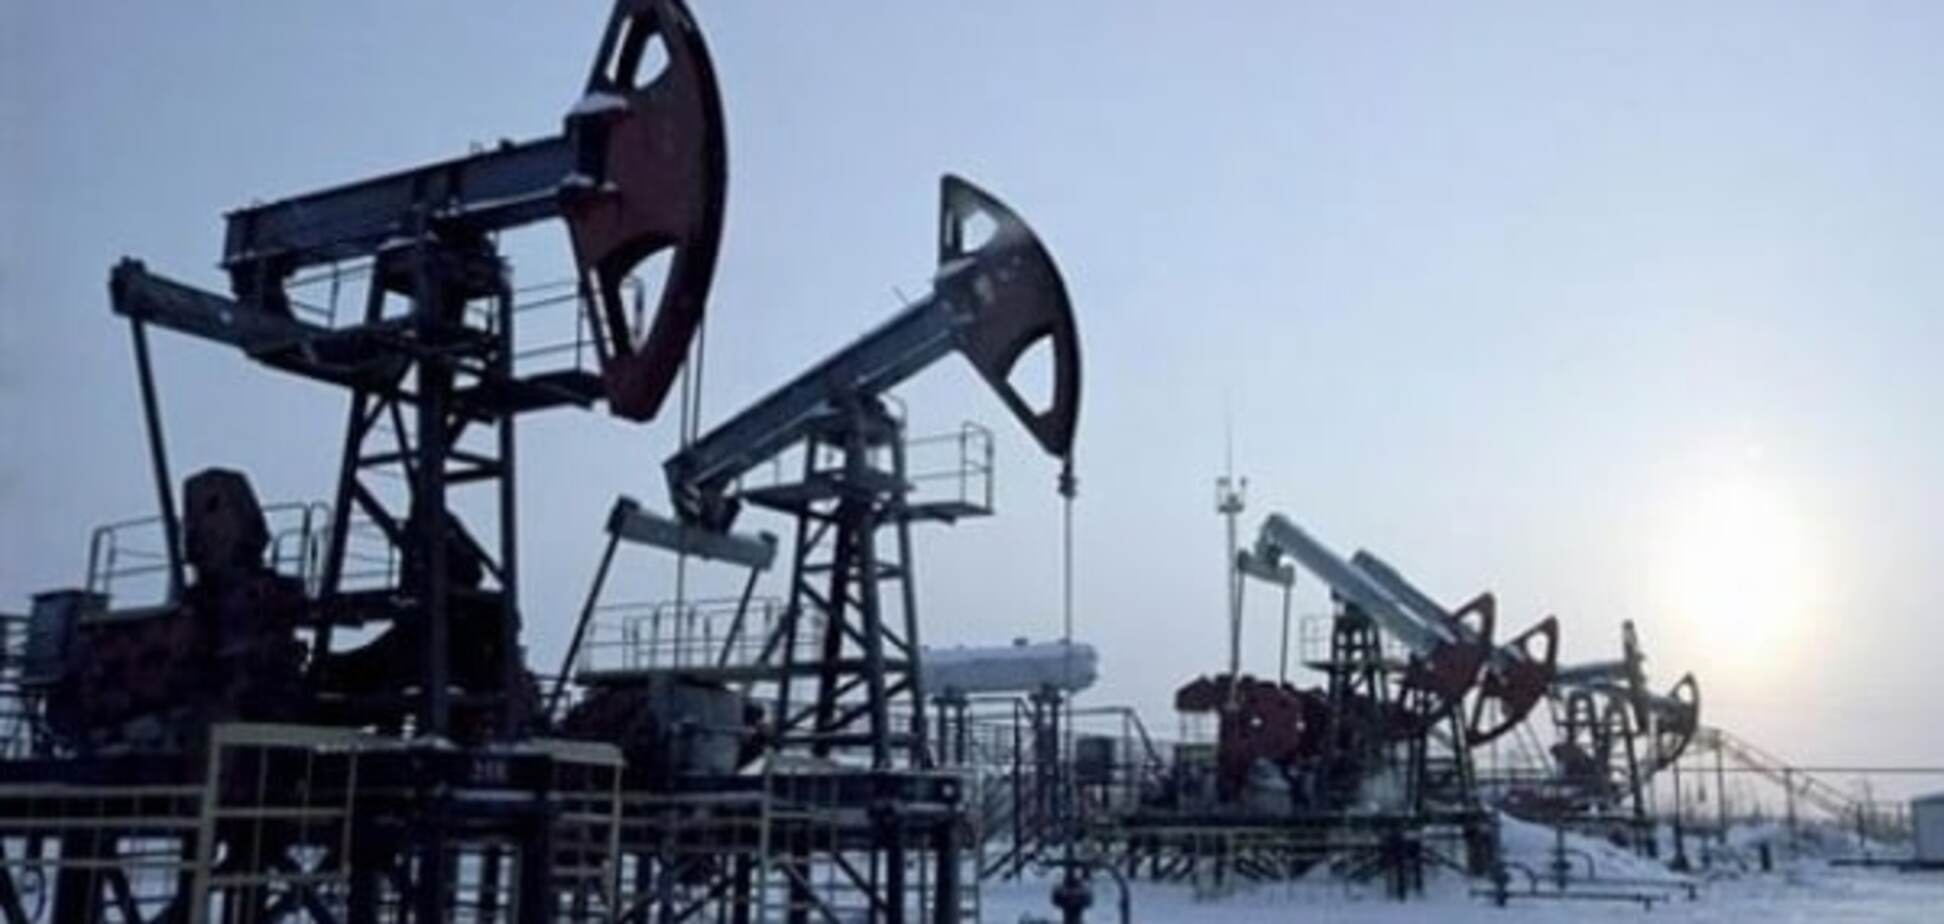 Ще падати і падати: названо собівартість видобутку нафти в Росії